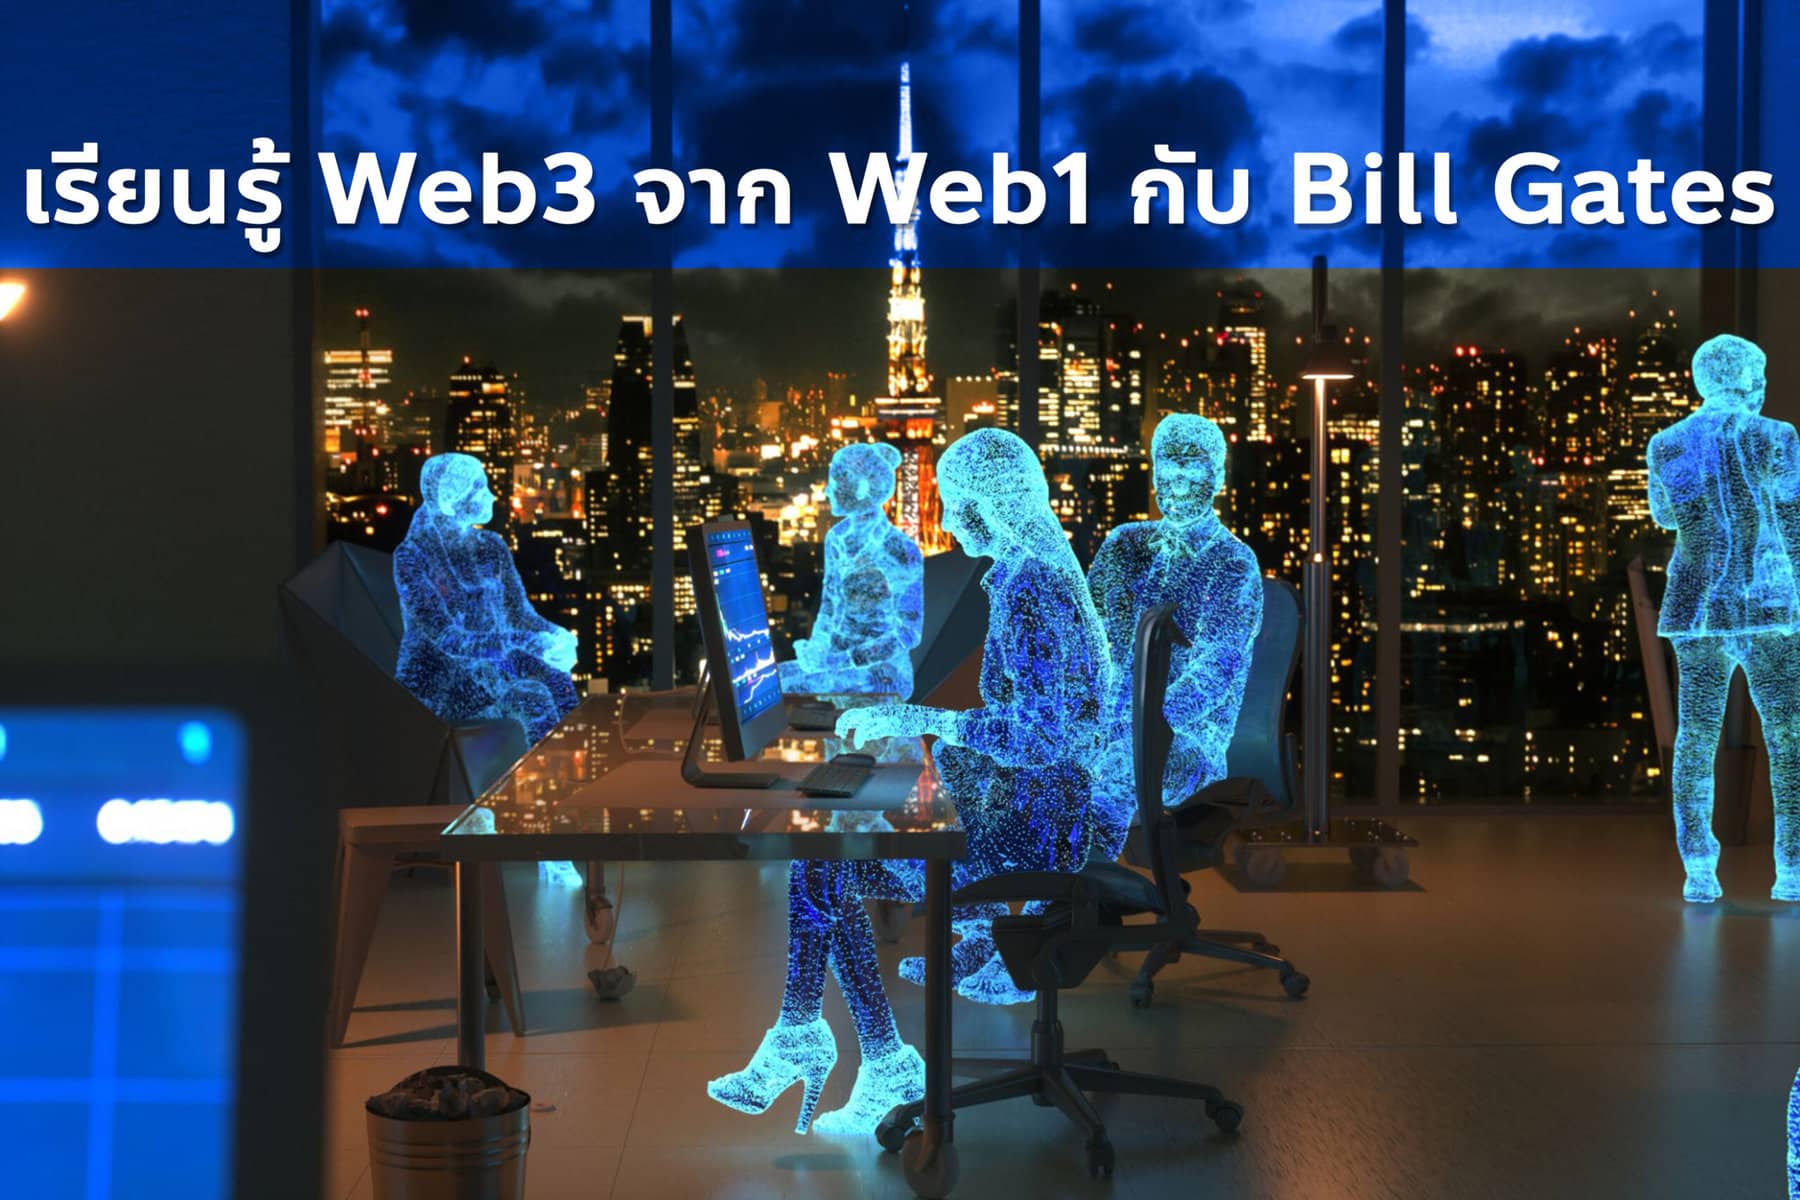 เรียนรู้ Web3 จากการให้สัมภาษณ์ของ Bill Gates ถึง Web1 ในปี 1995